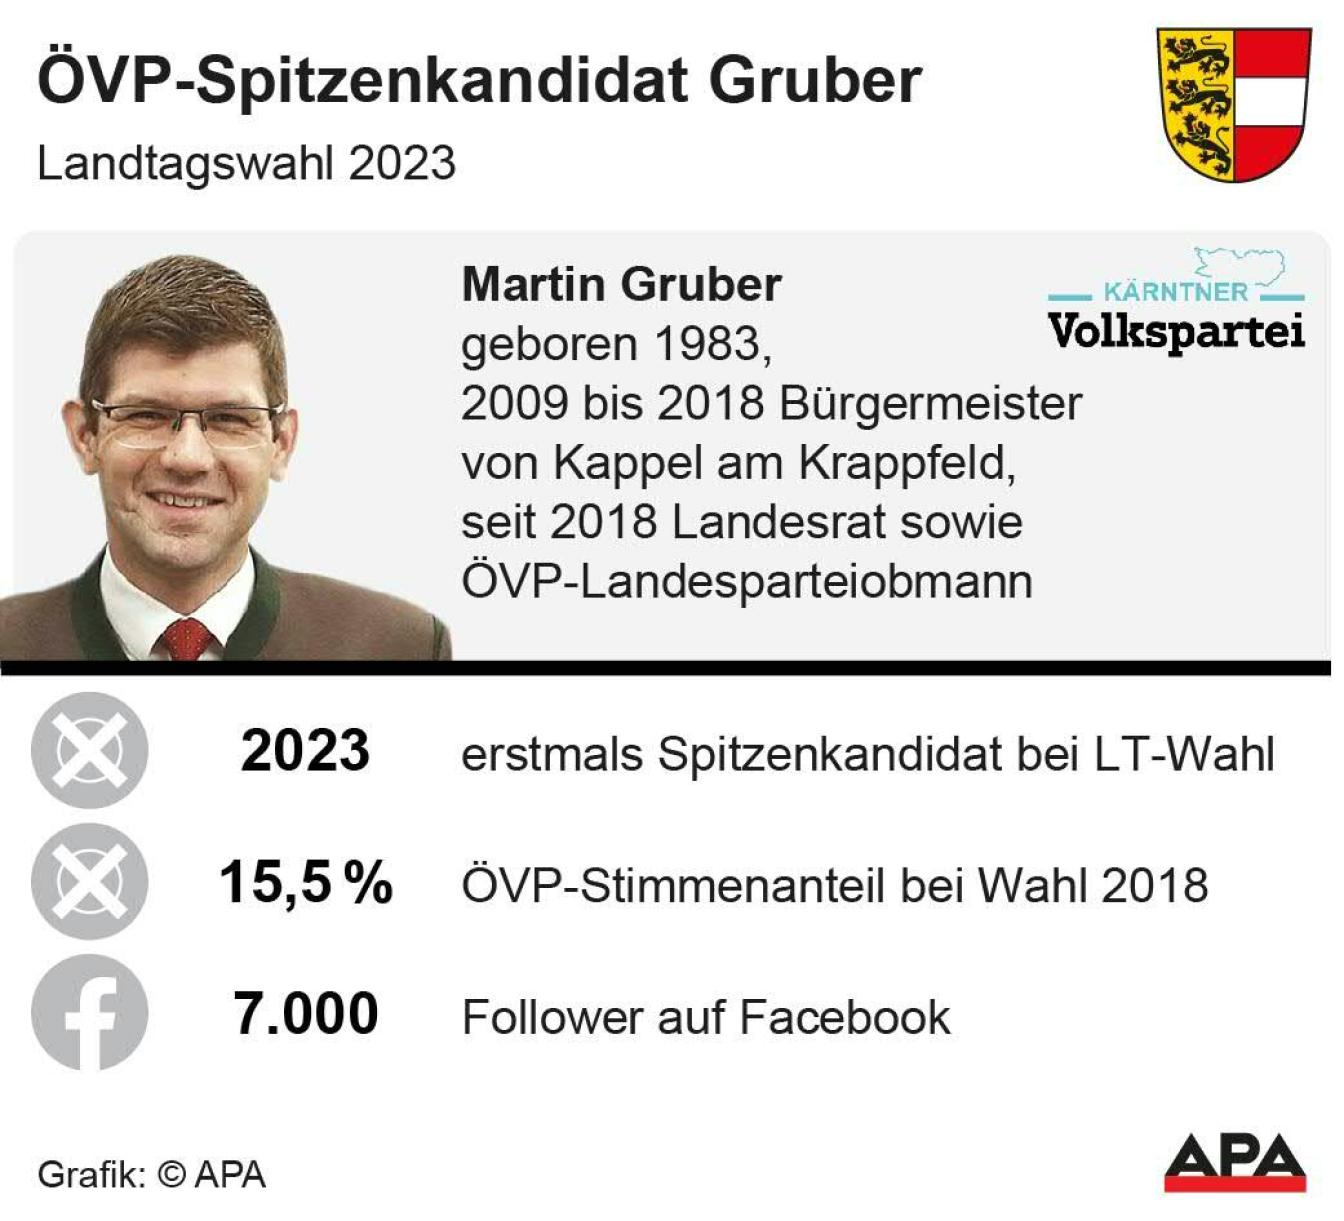 ÖVP-Spitzenkandidat Gruber